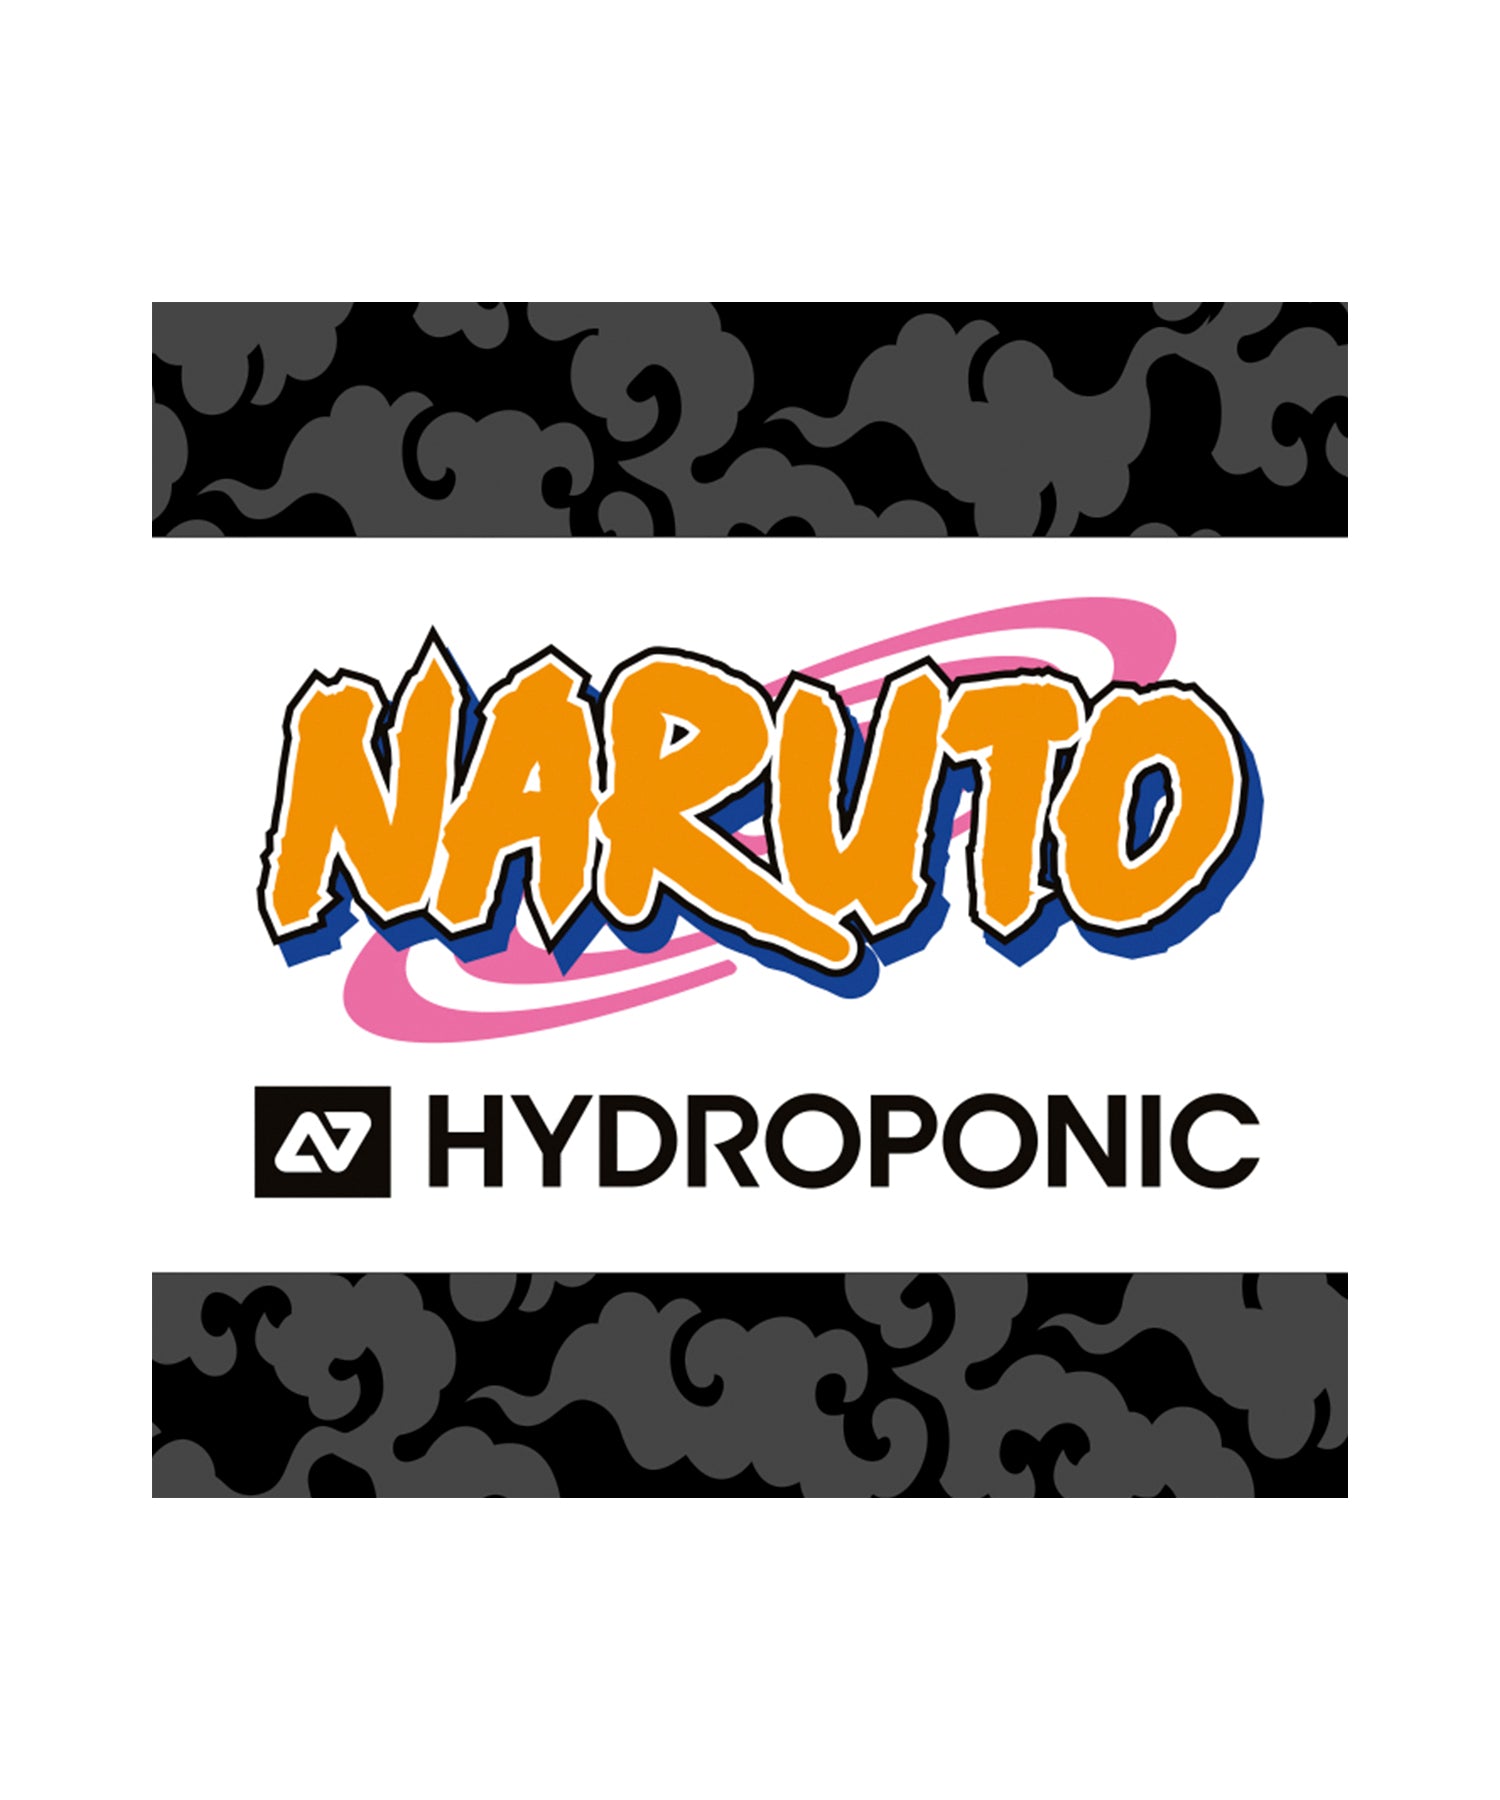 skate-completo-hydroponic-naruto-leaf-village-ninjas-a-punto-para-patinar-ilustraciones-del-famoso-manga-Naruto-componentes-de-calidad